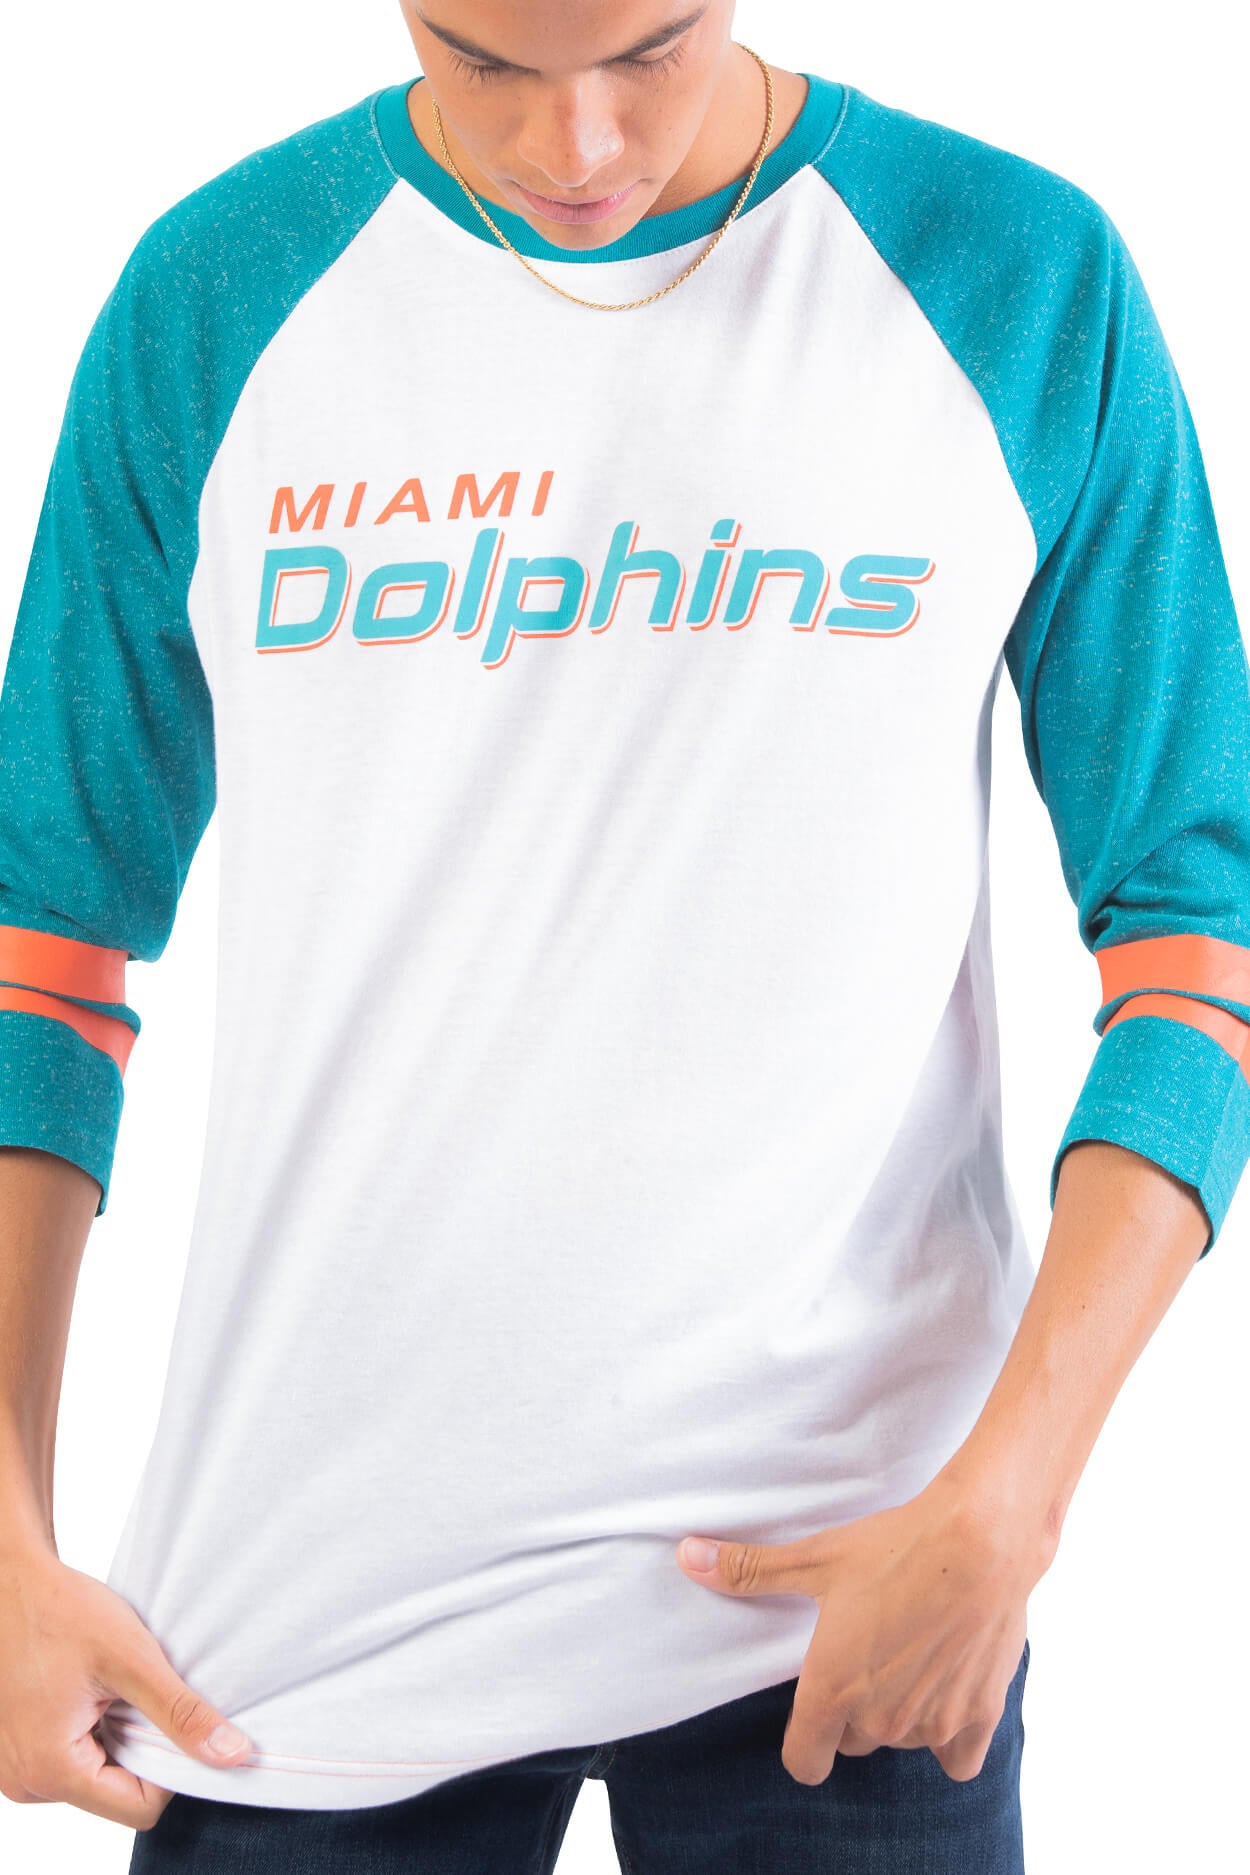 NFL Miami Dolphins Men's Baseball Tee|Miami Dolphins